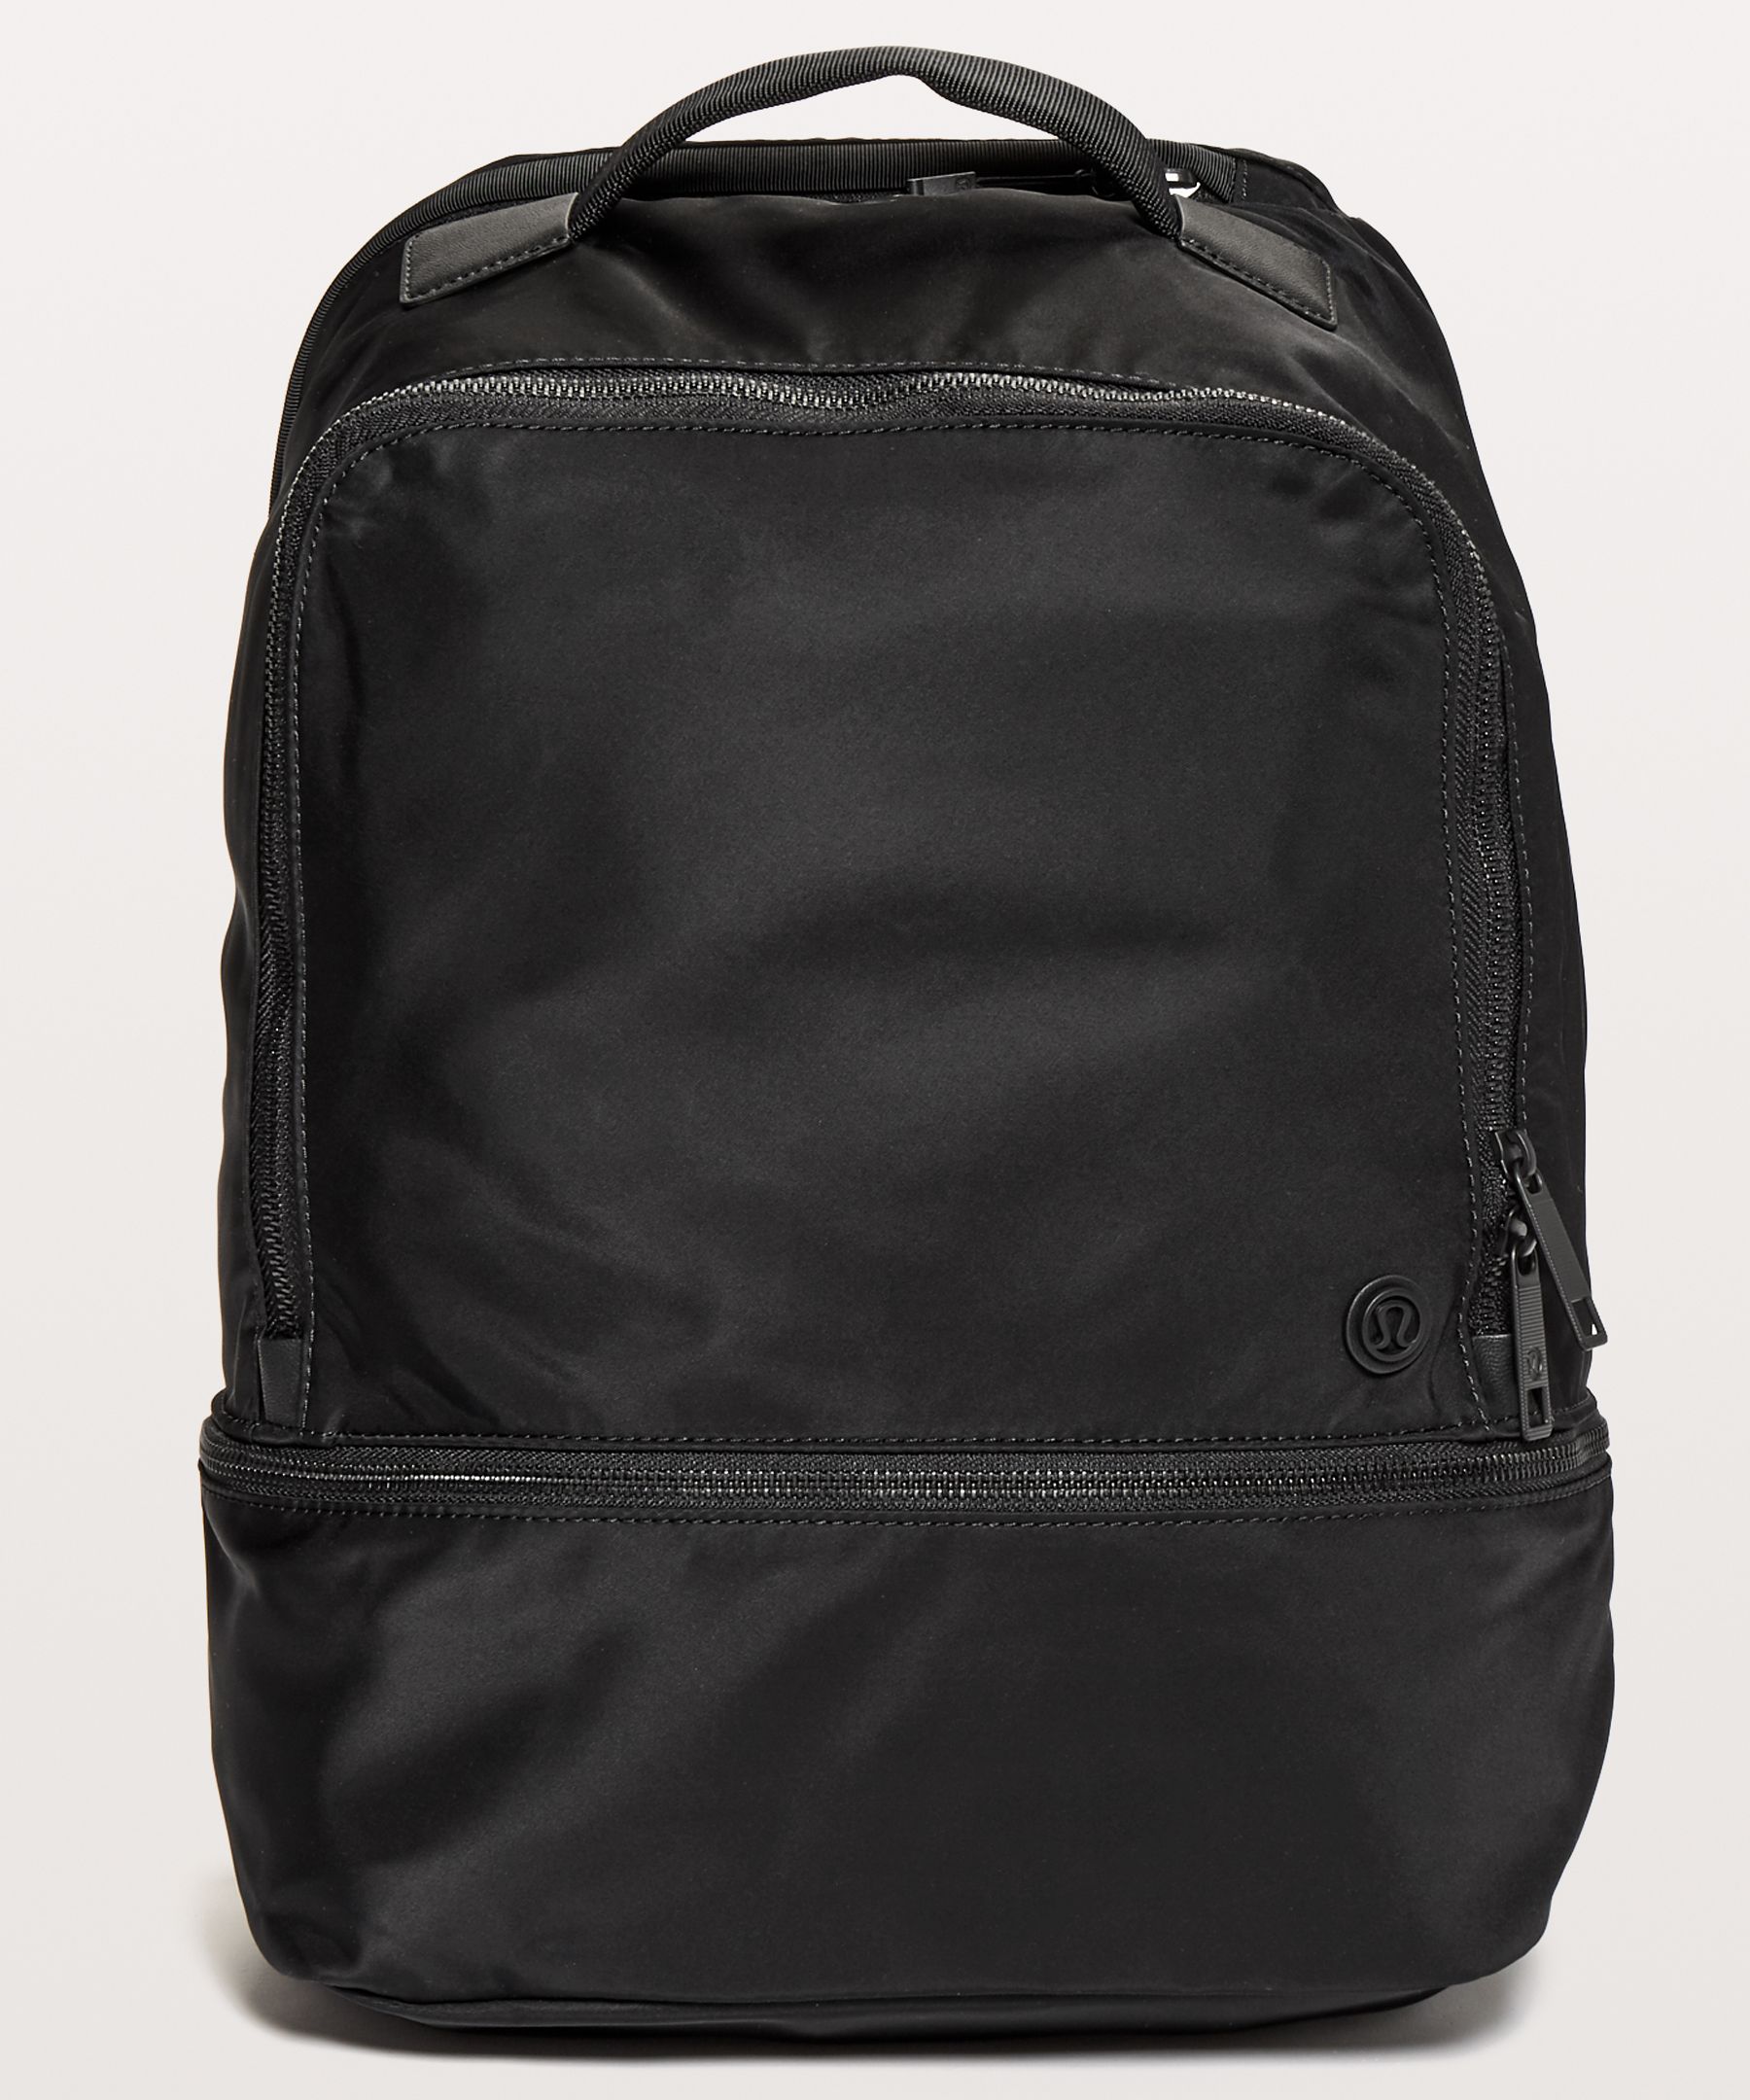 lululemon large backpack